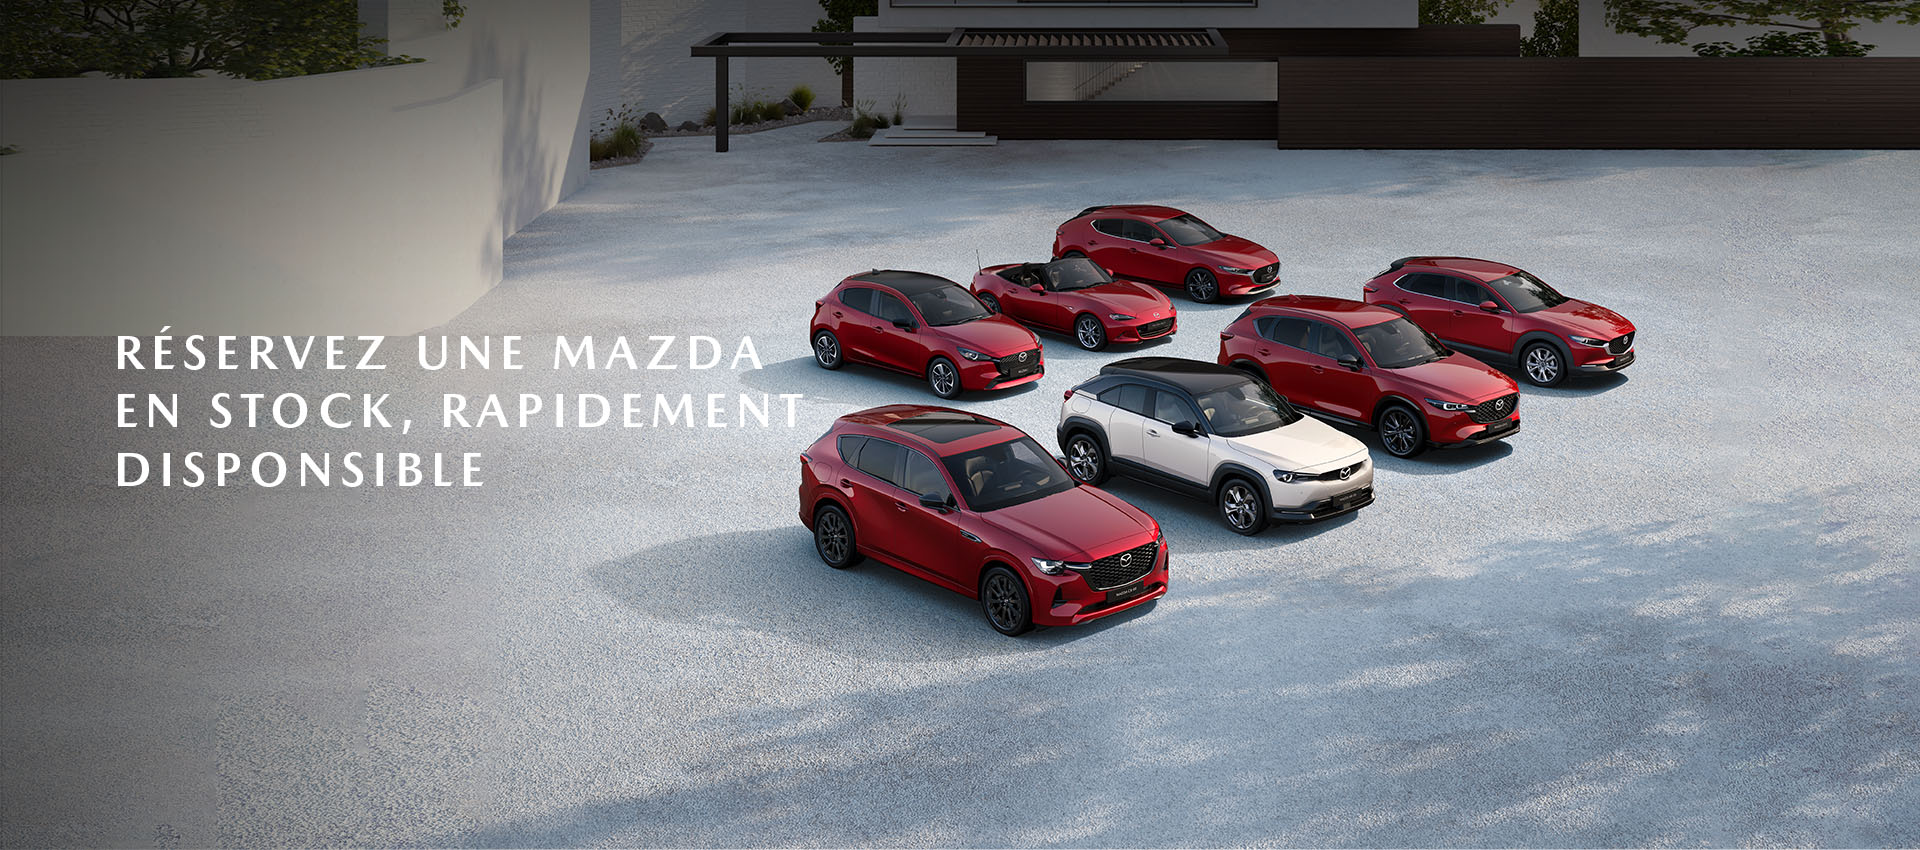 La gamme Mazda